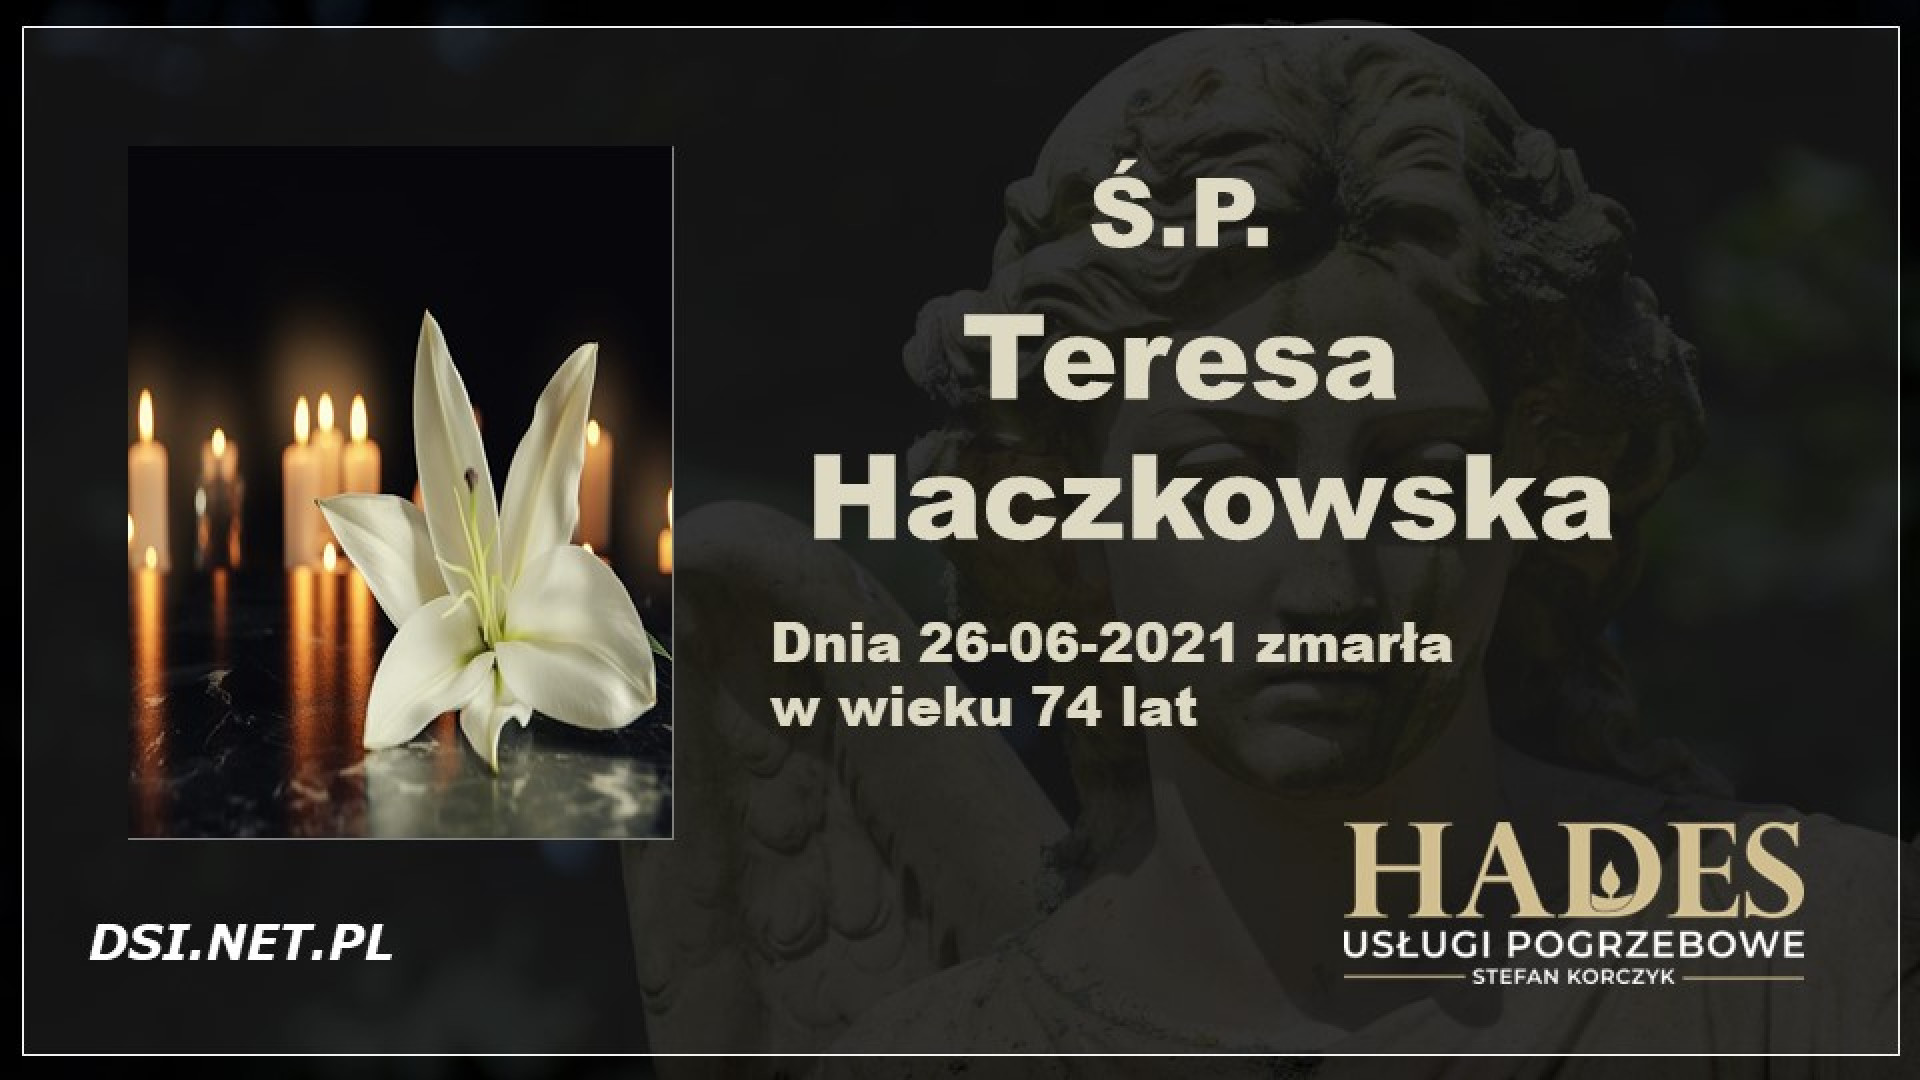 Ś.P. Teresa Haczkowska